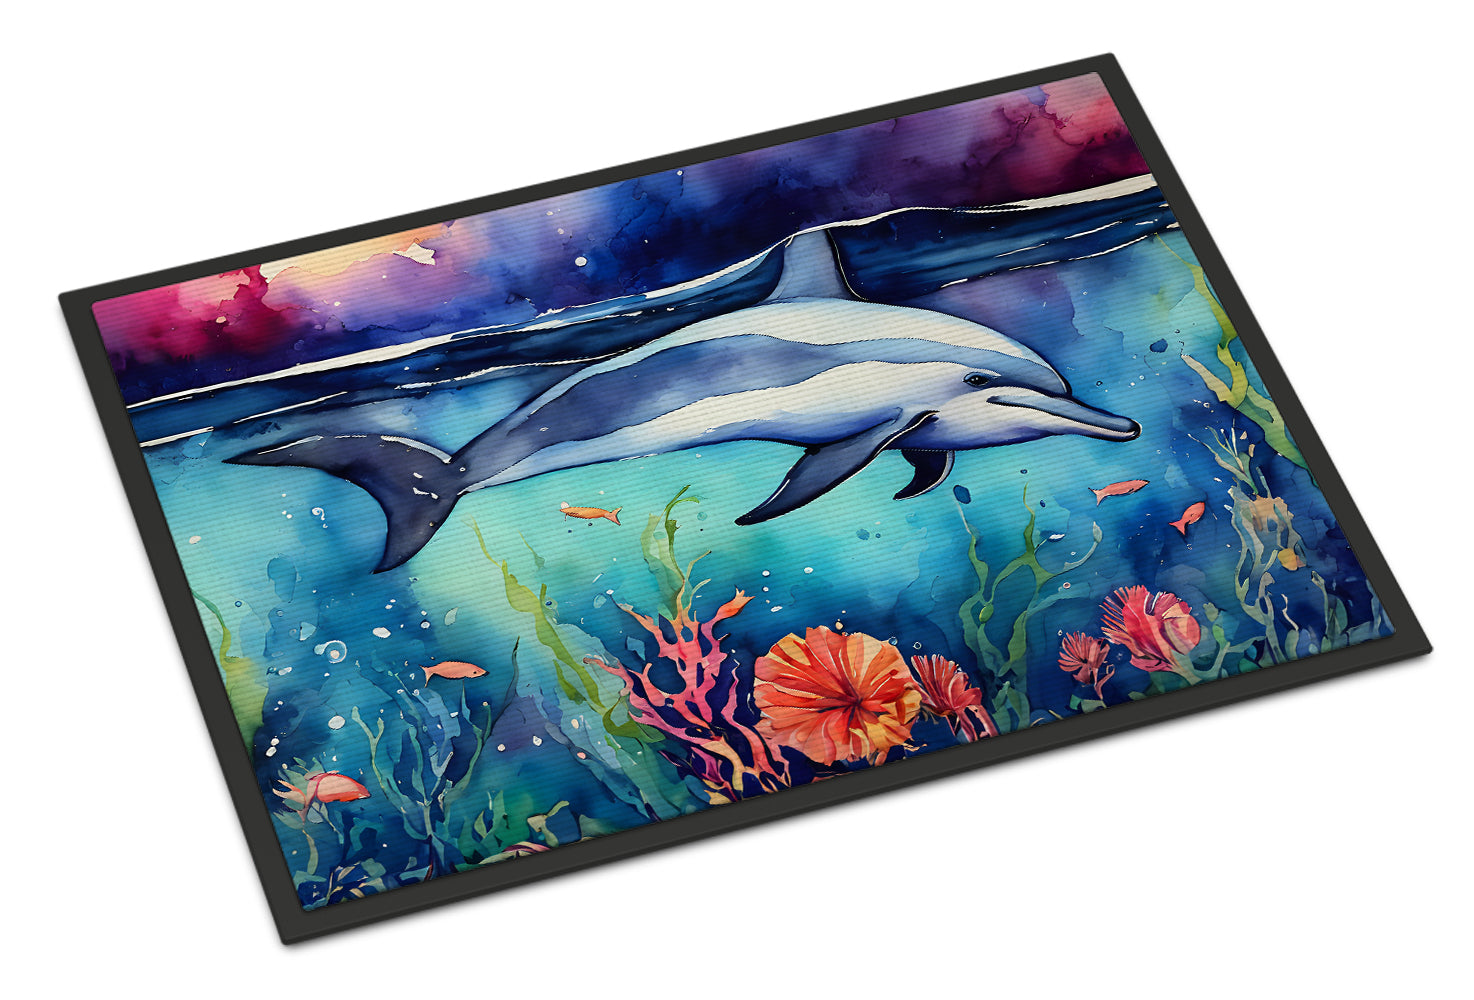 Buy this Dolphin Doormat